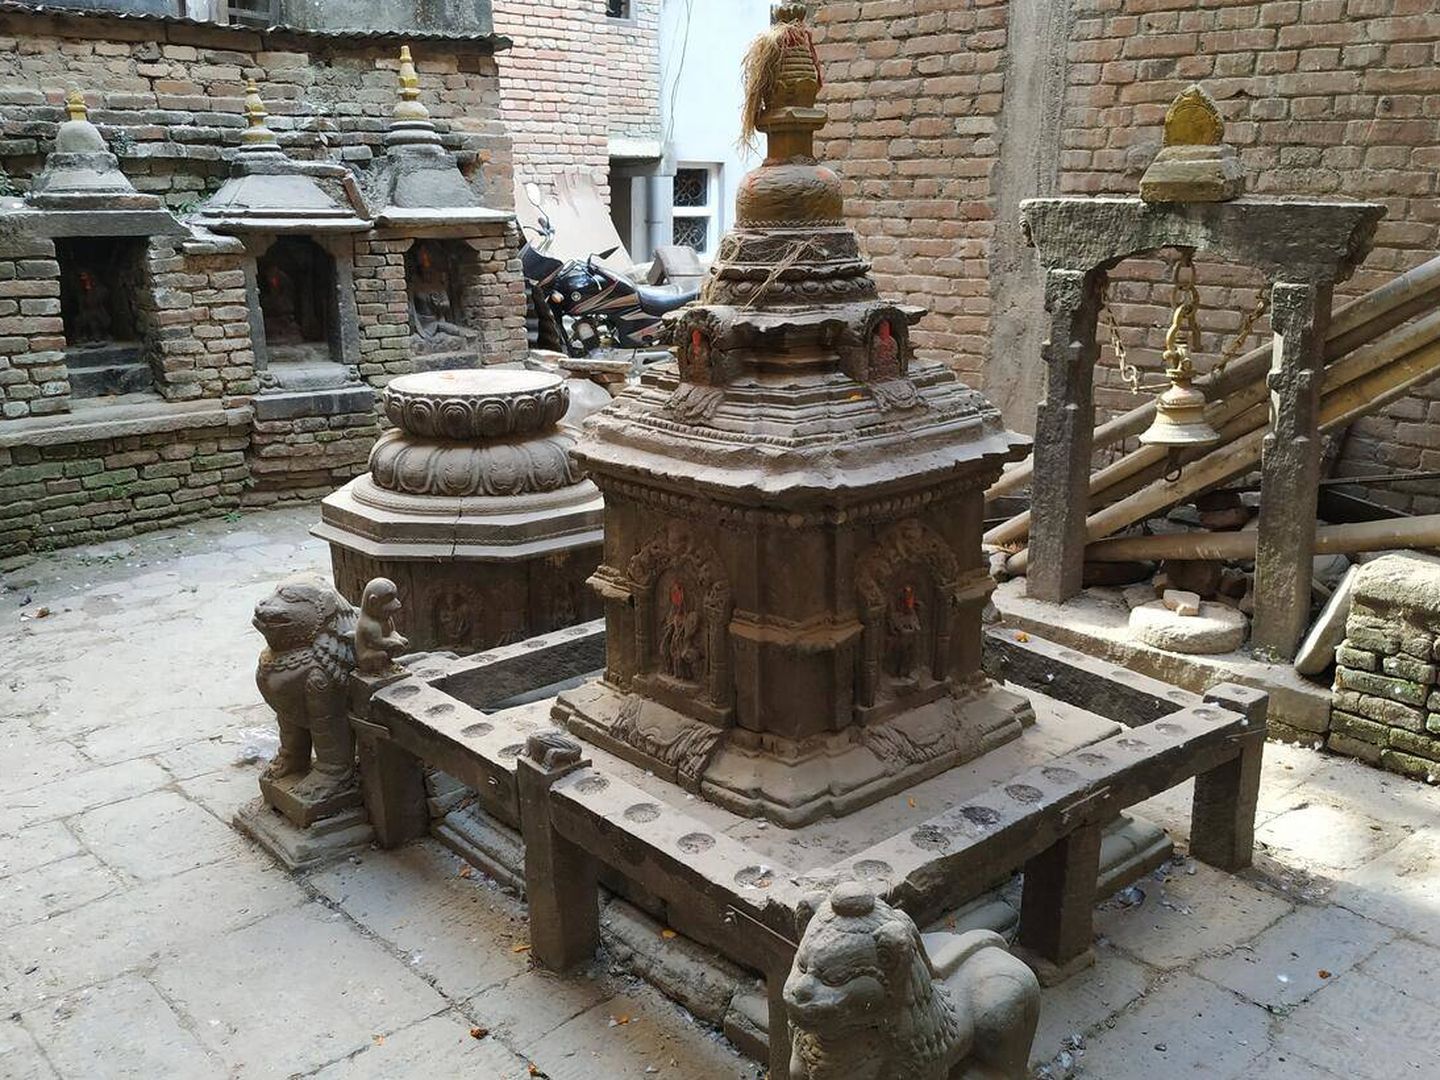 Edificicaciones en el Valle de Katmandú. (World Monuments Fund)